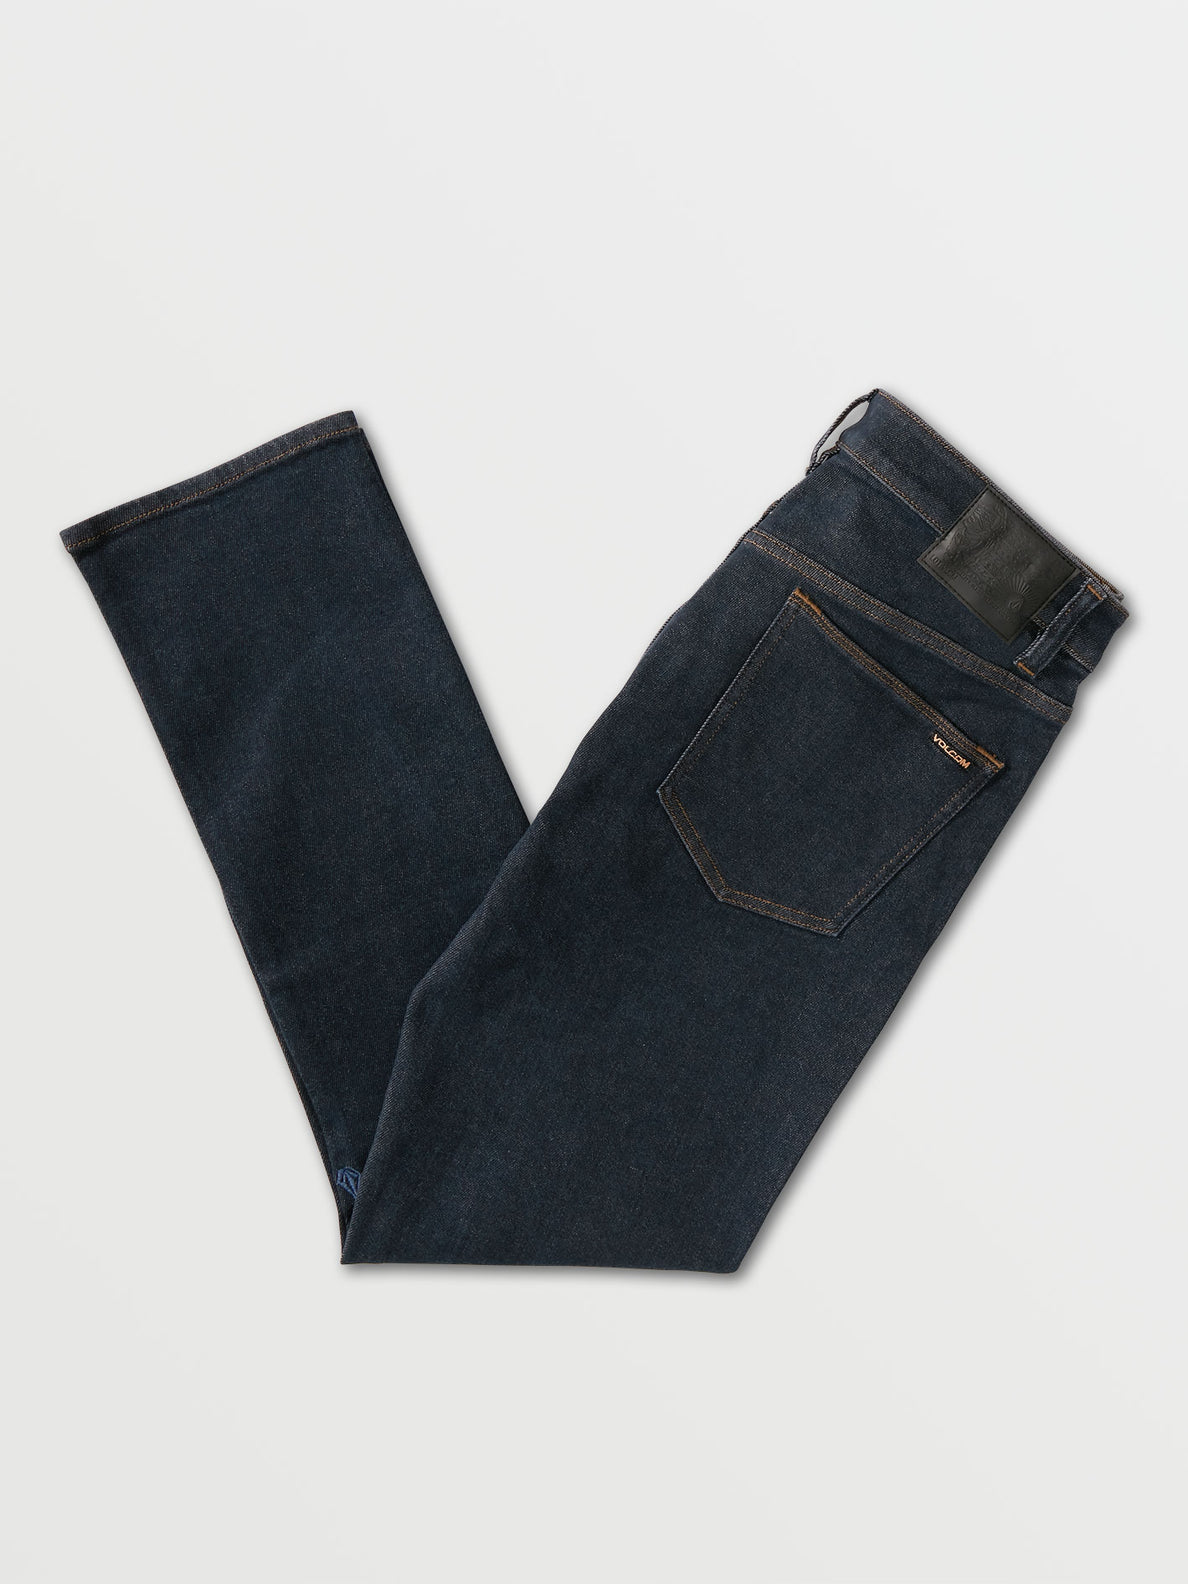 Vorta Slim Fit Jeans - Grey Indigo Rinse (A1931501_GIR) [B]